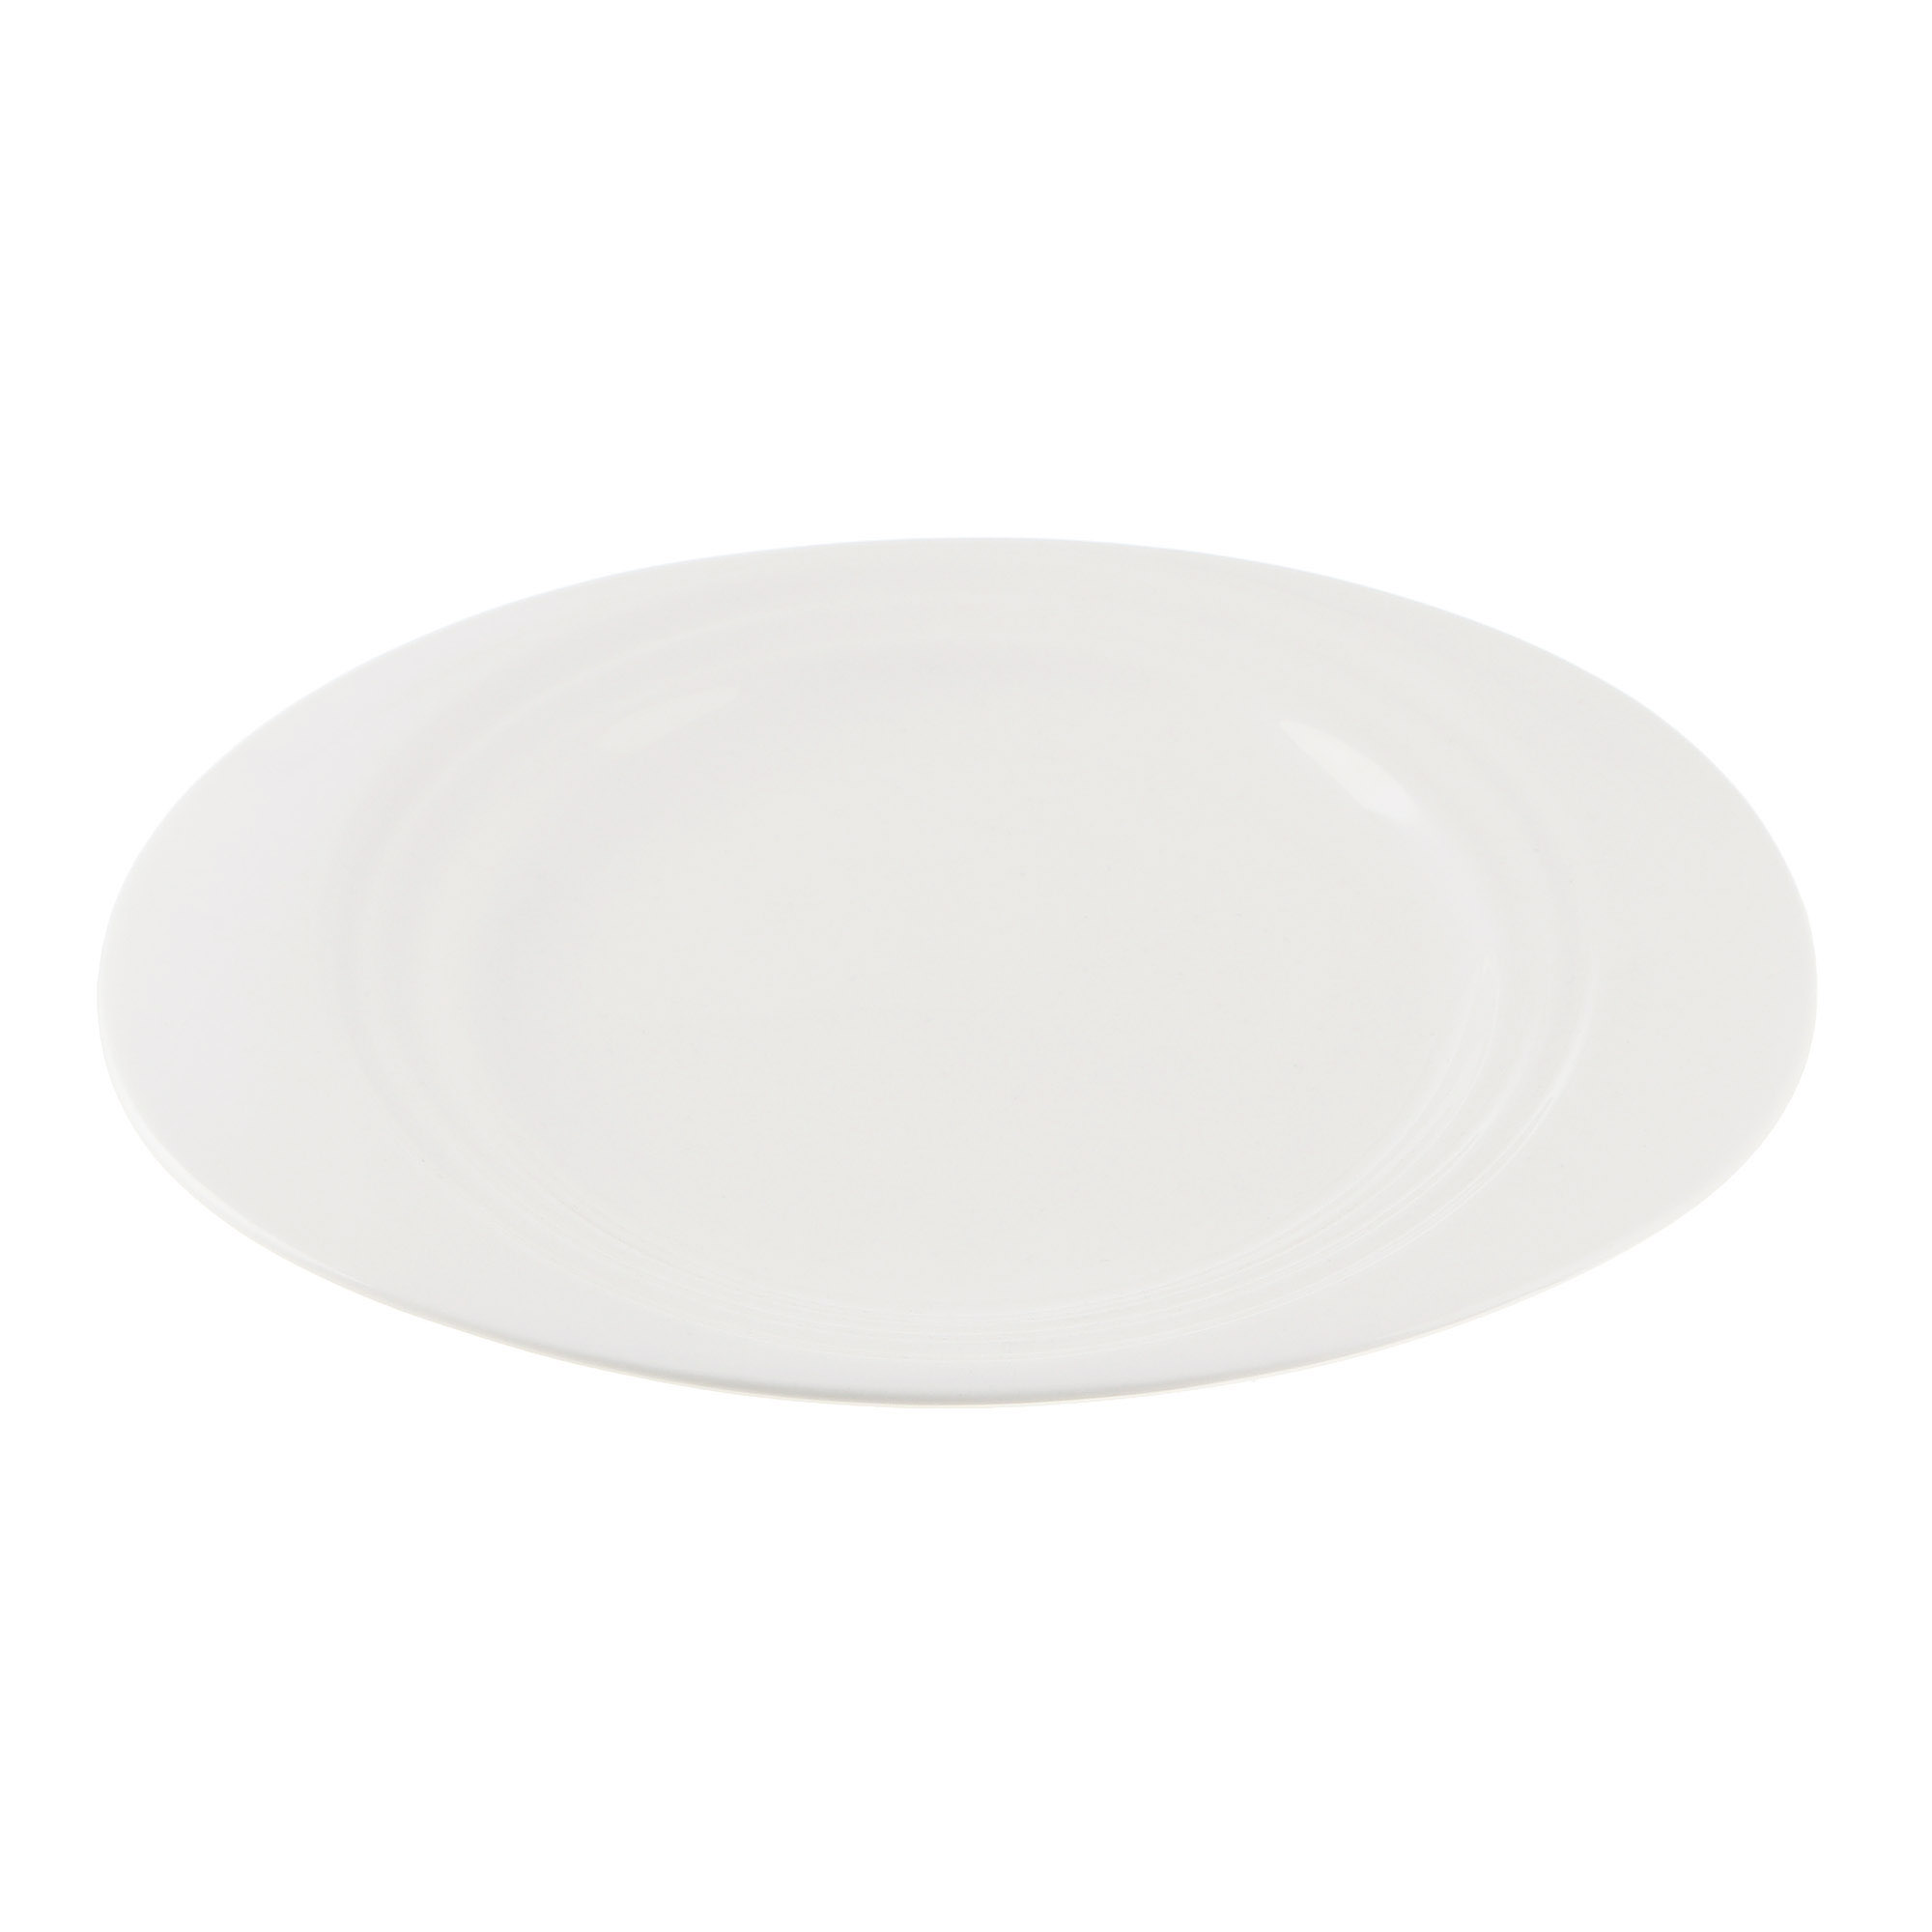 Тарелка Cameo Concentrics фарфор 28,2 см тарелка cameo slanted oval 24 см